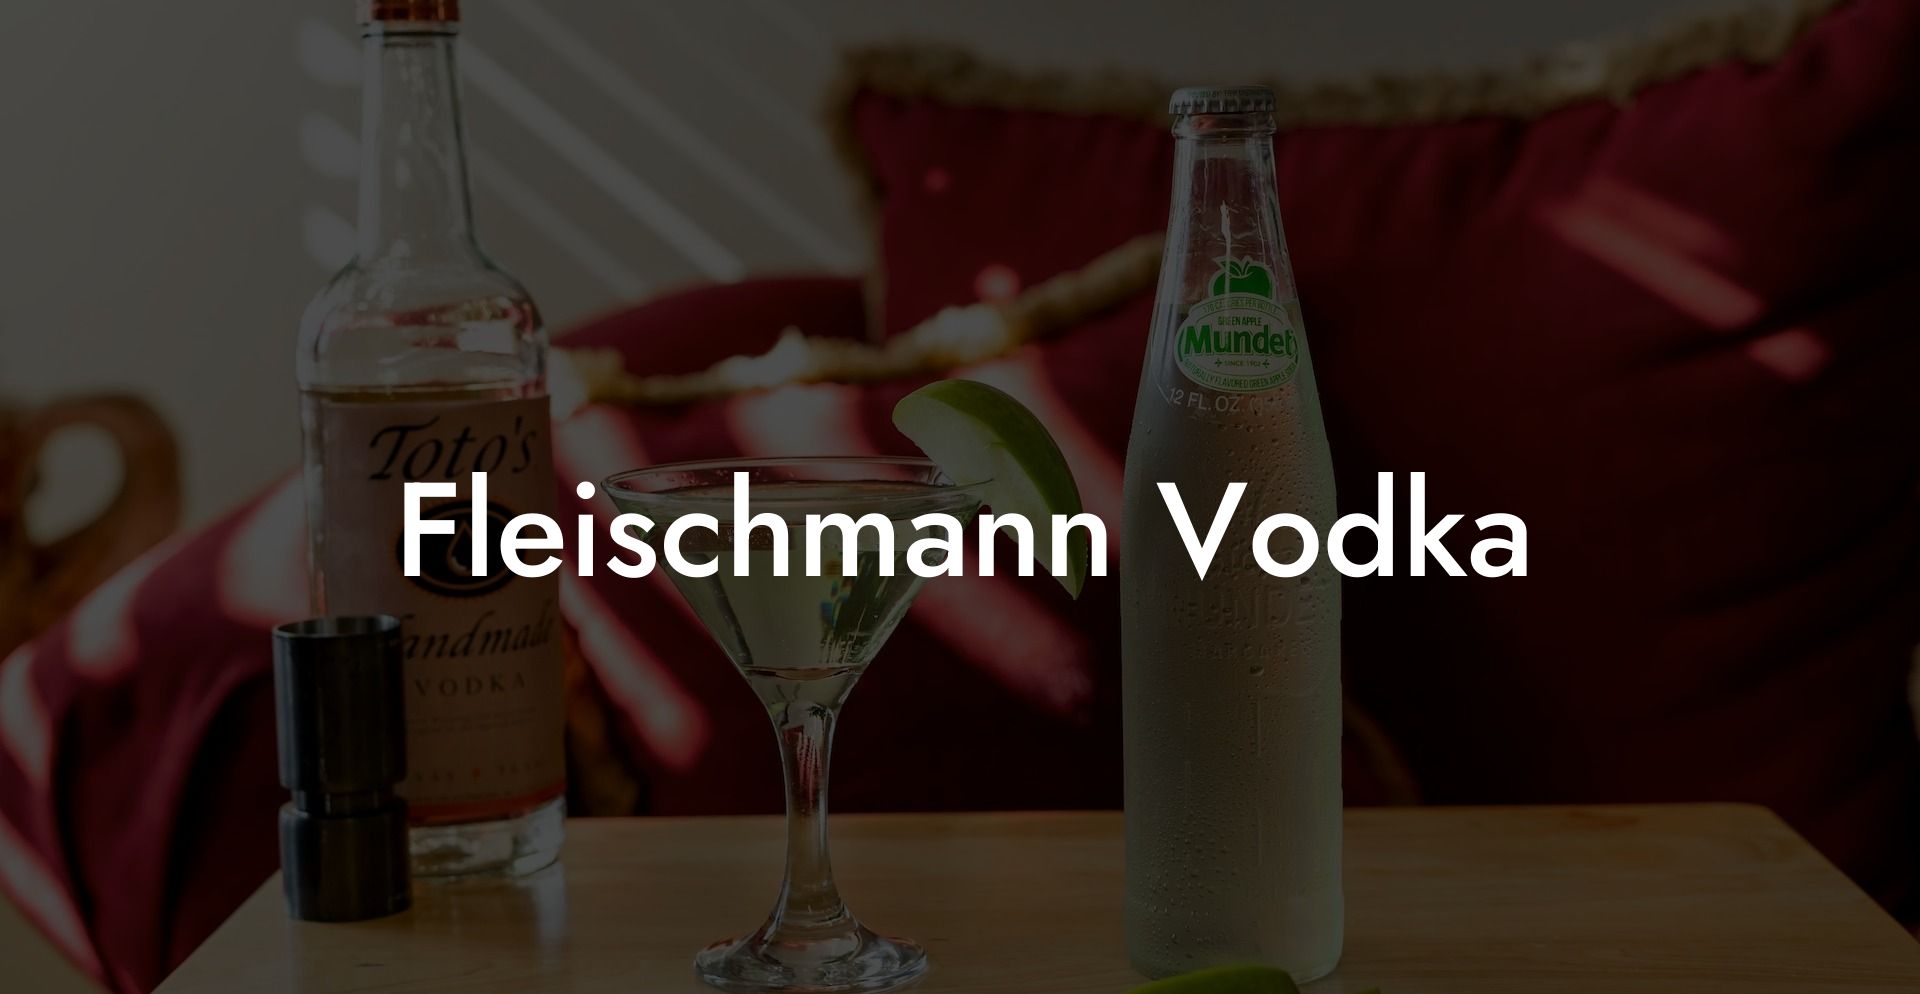 Fleischmann Vodka